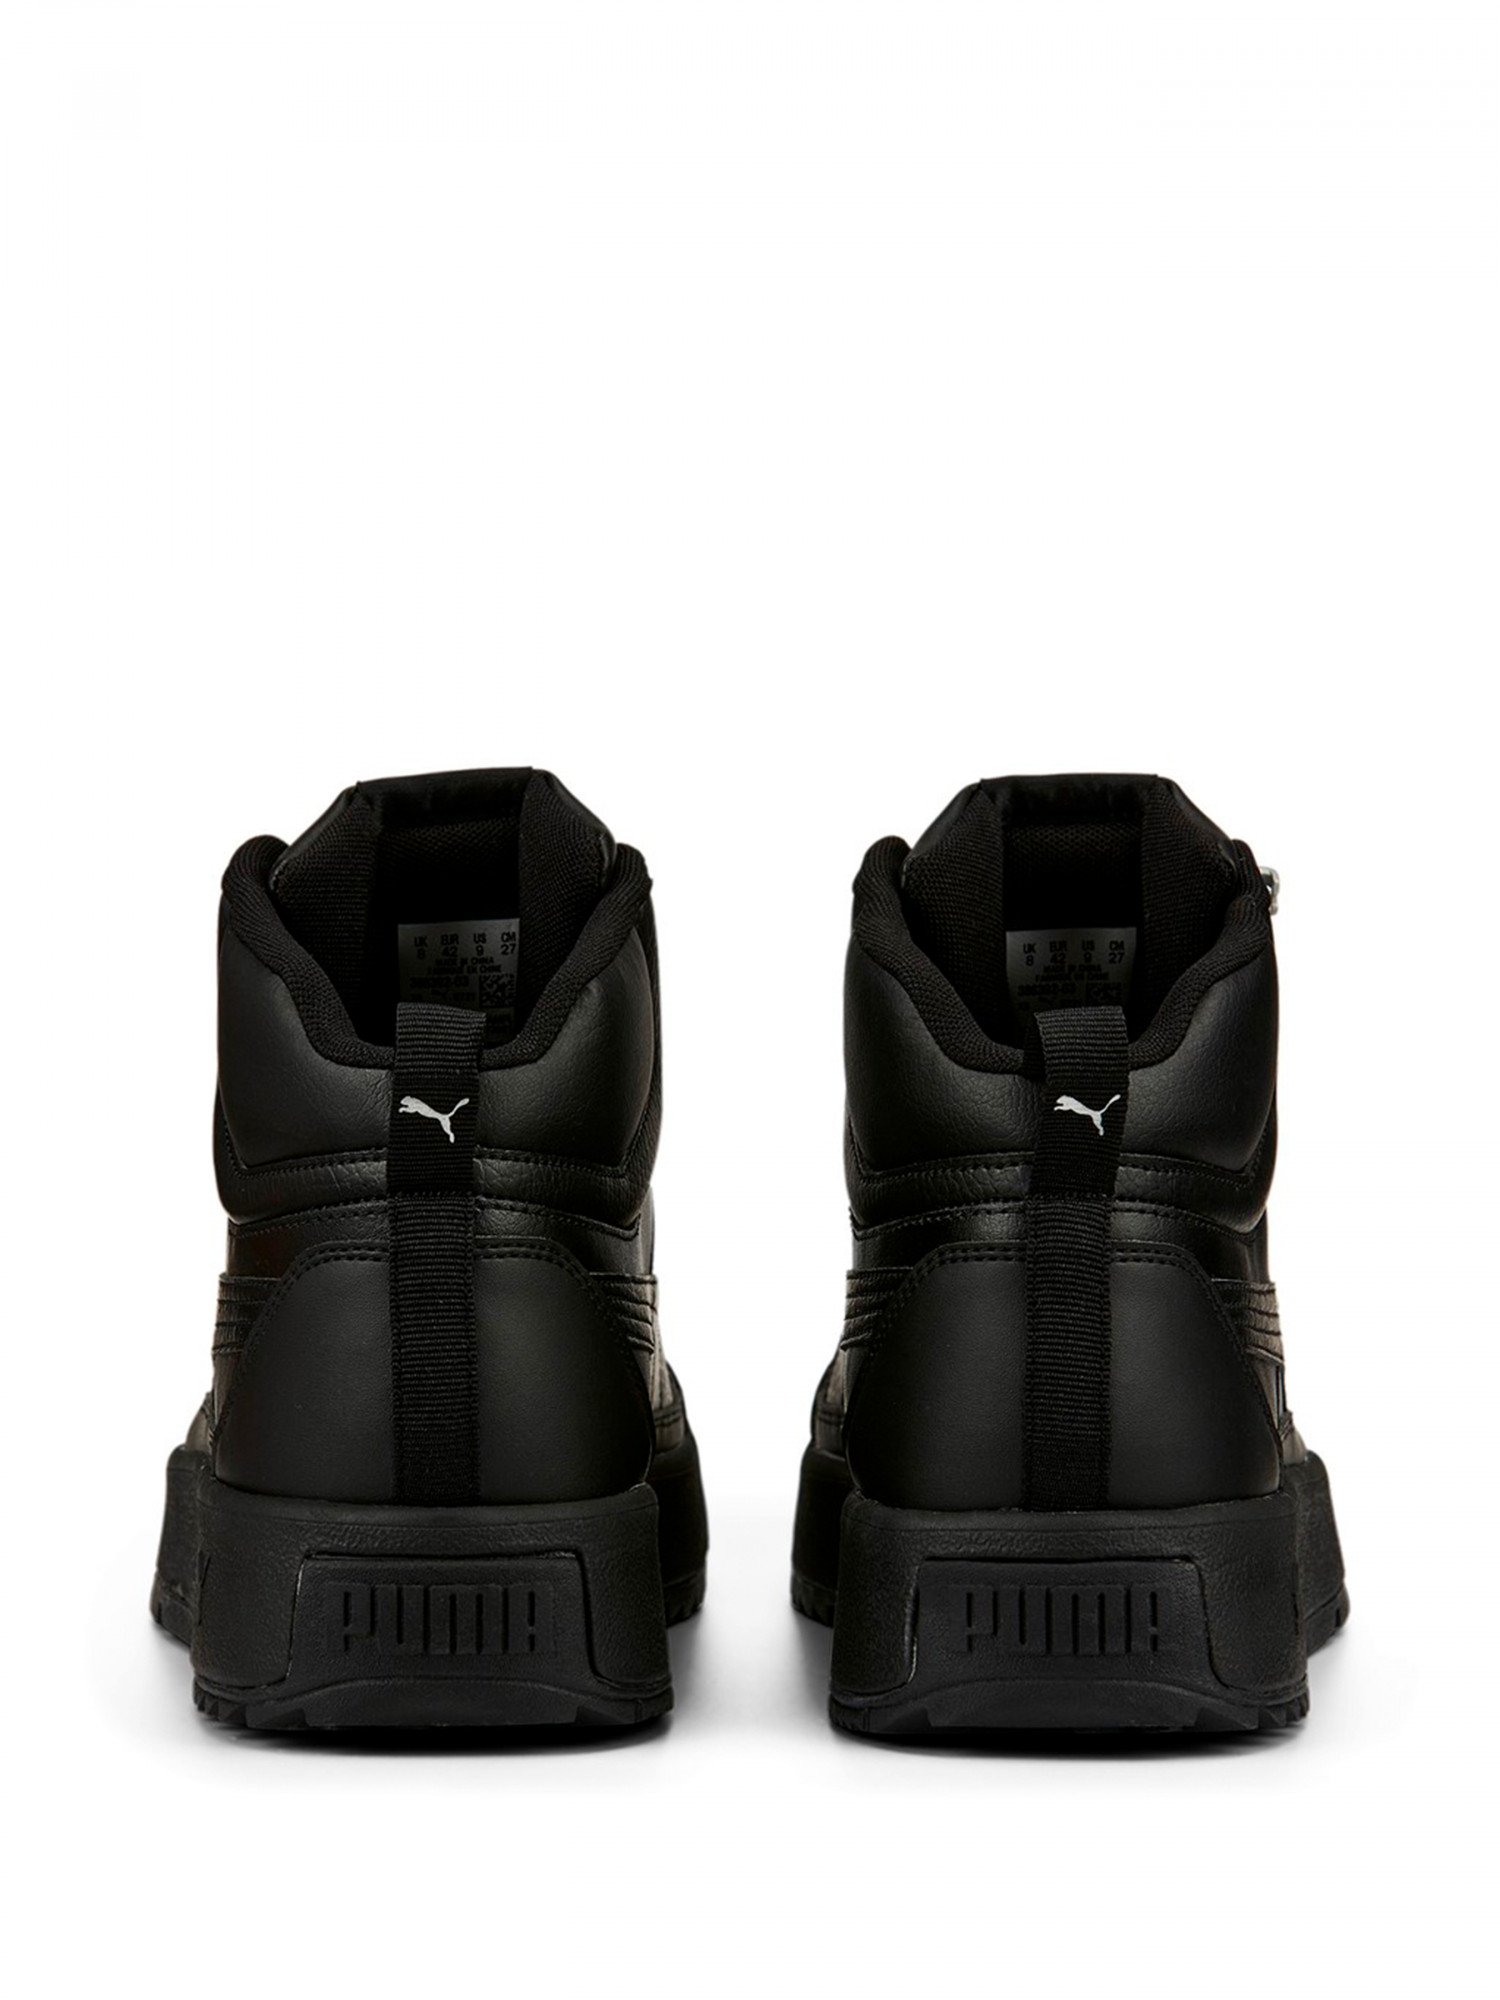 Ботинки мужские Puma Tarrenz SB II черные 38639203 изображение 4